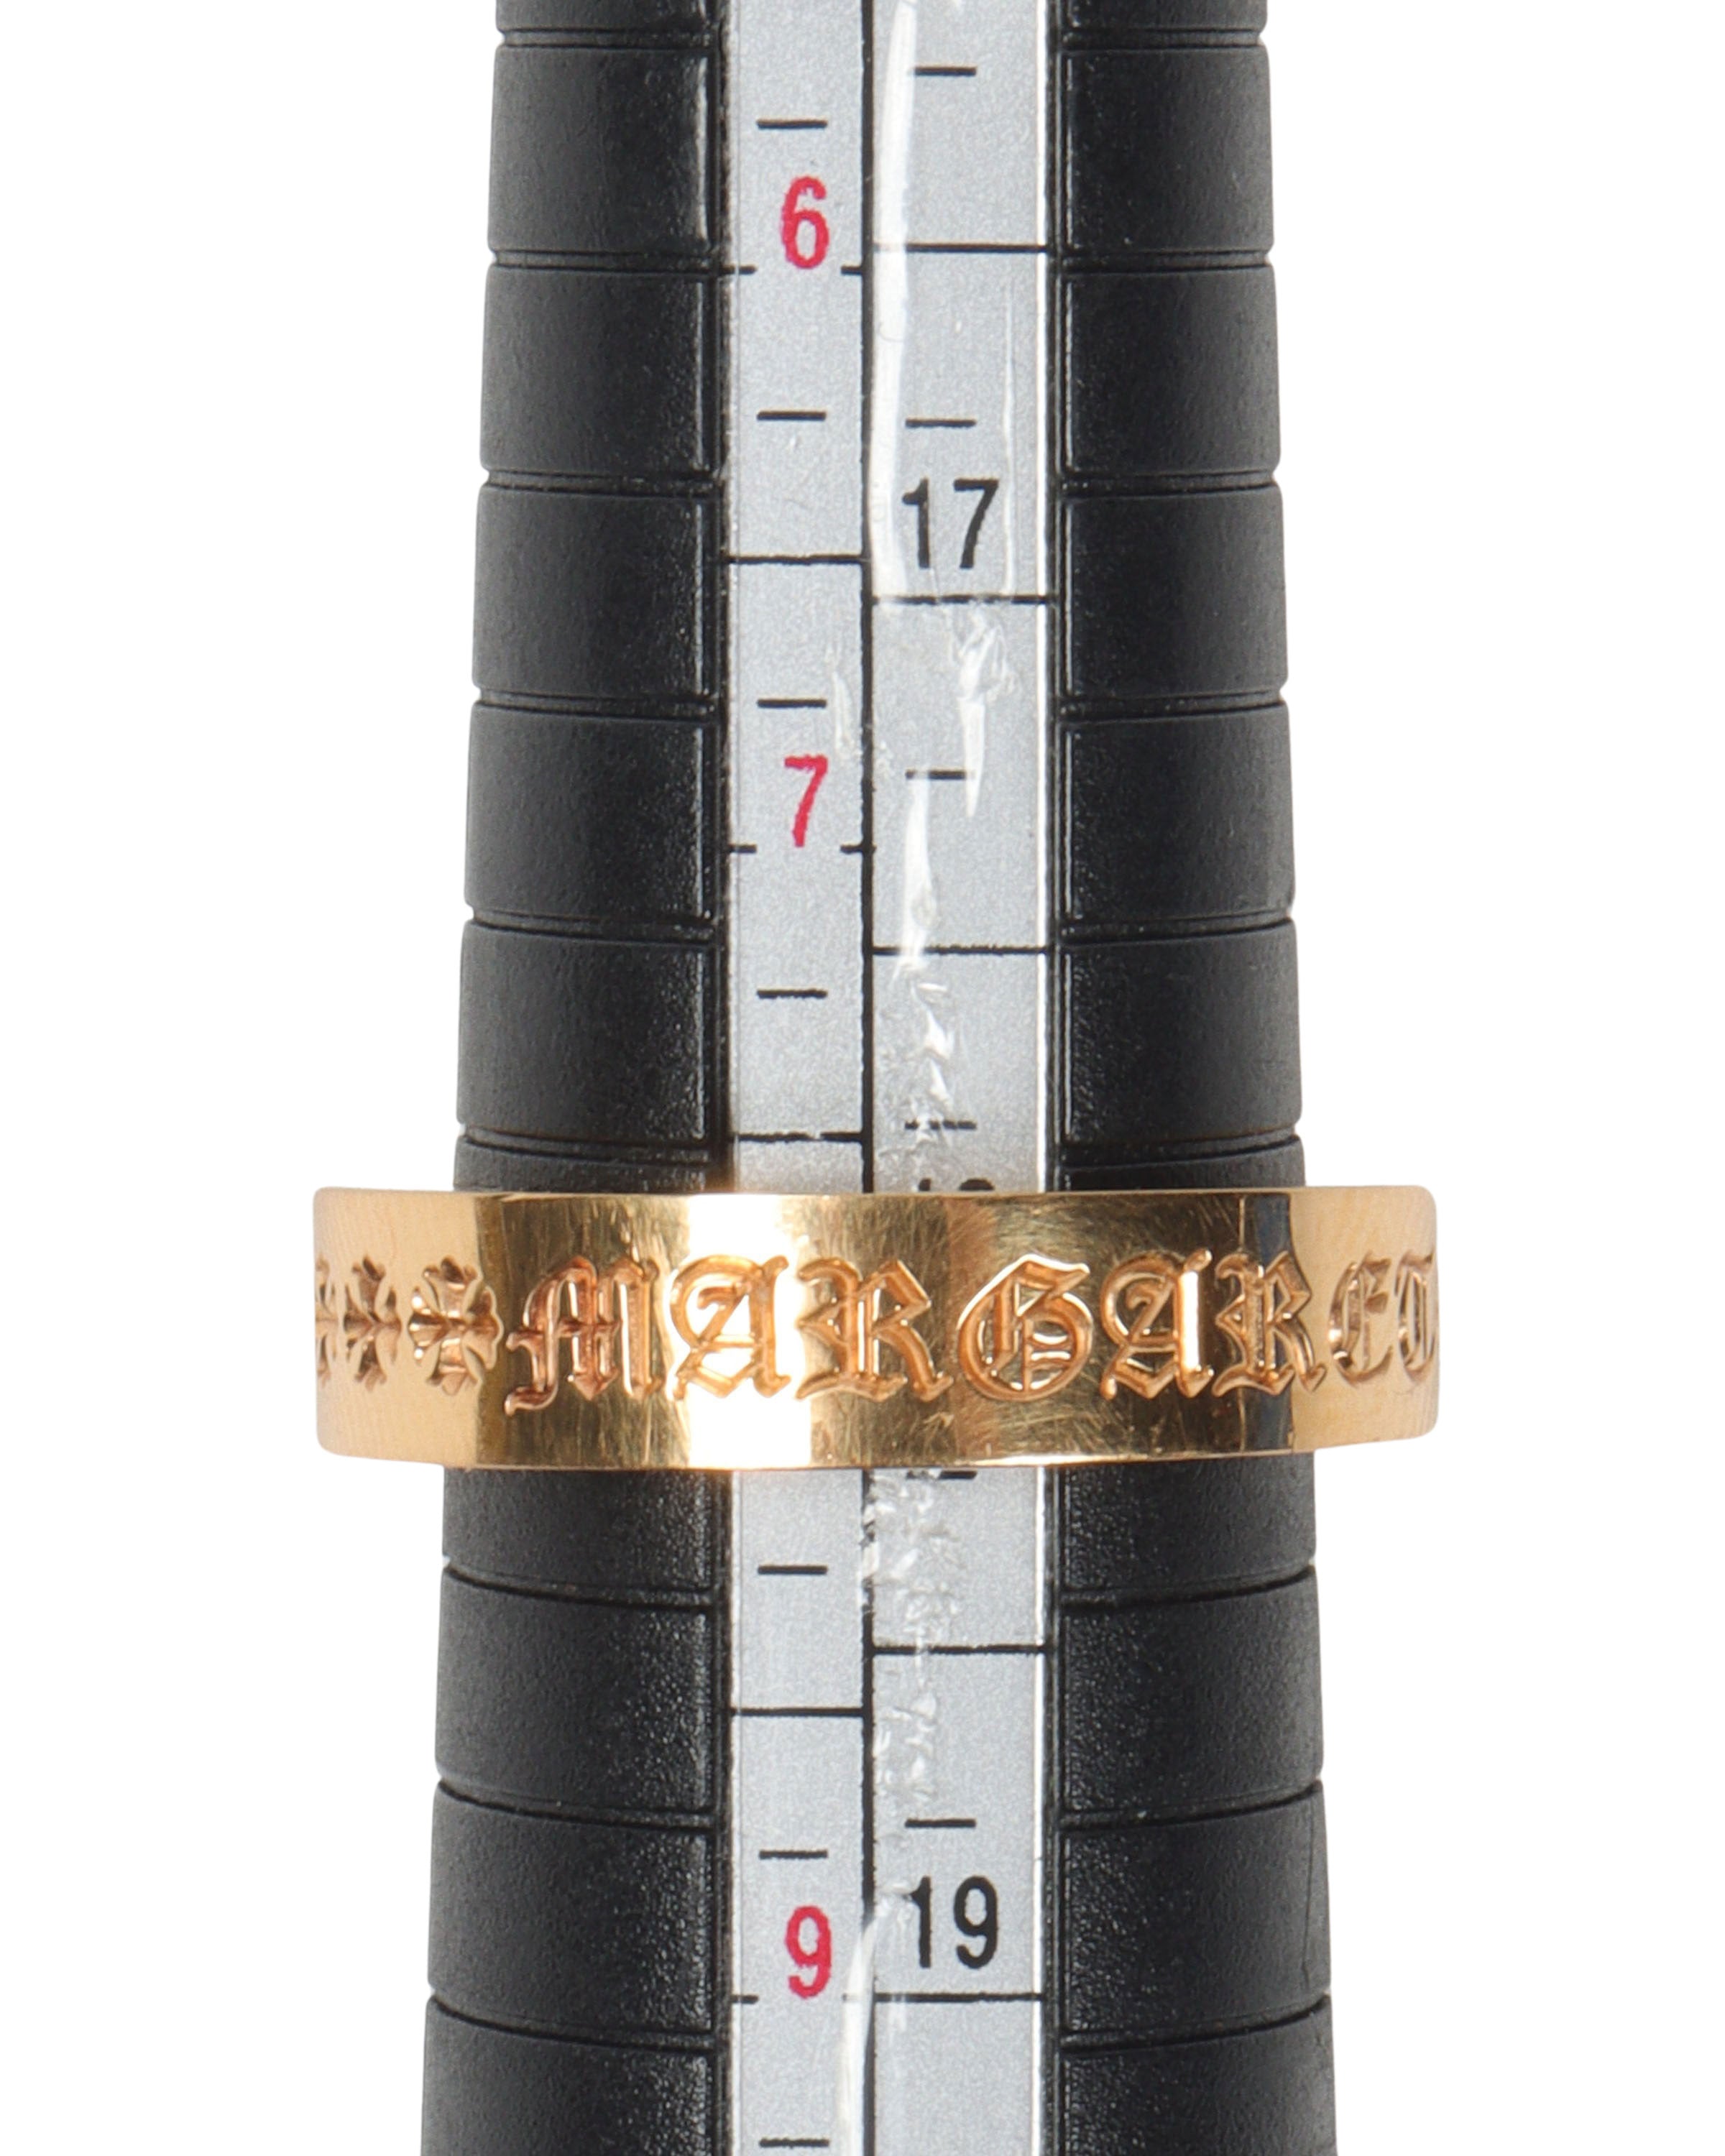 Custom Engraved "Margaret" 22k Gold Ring